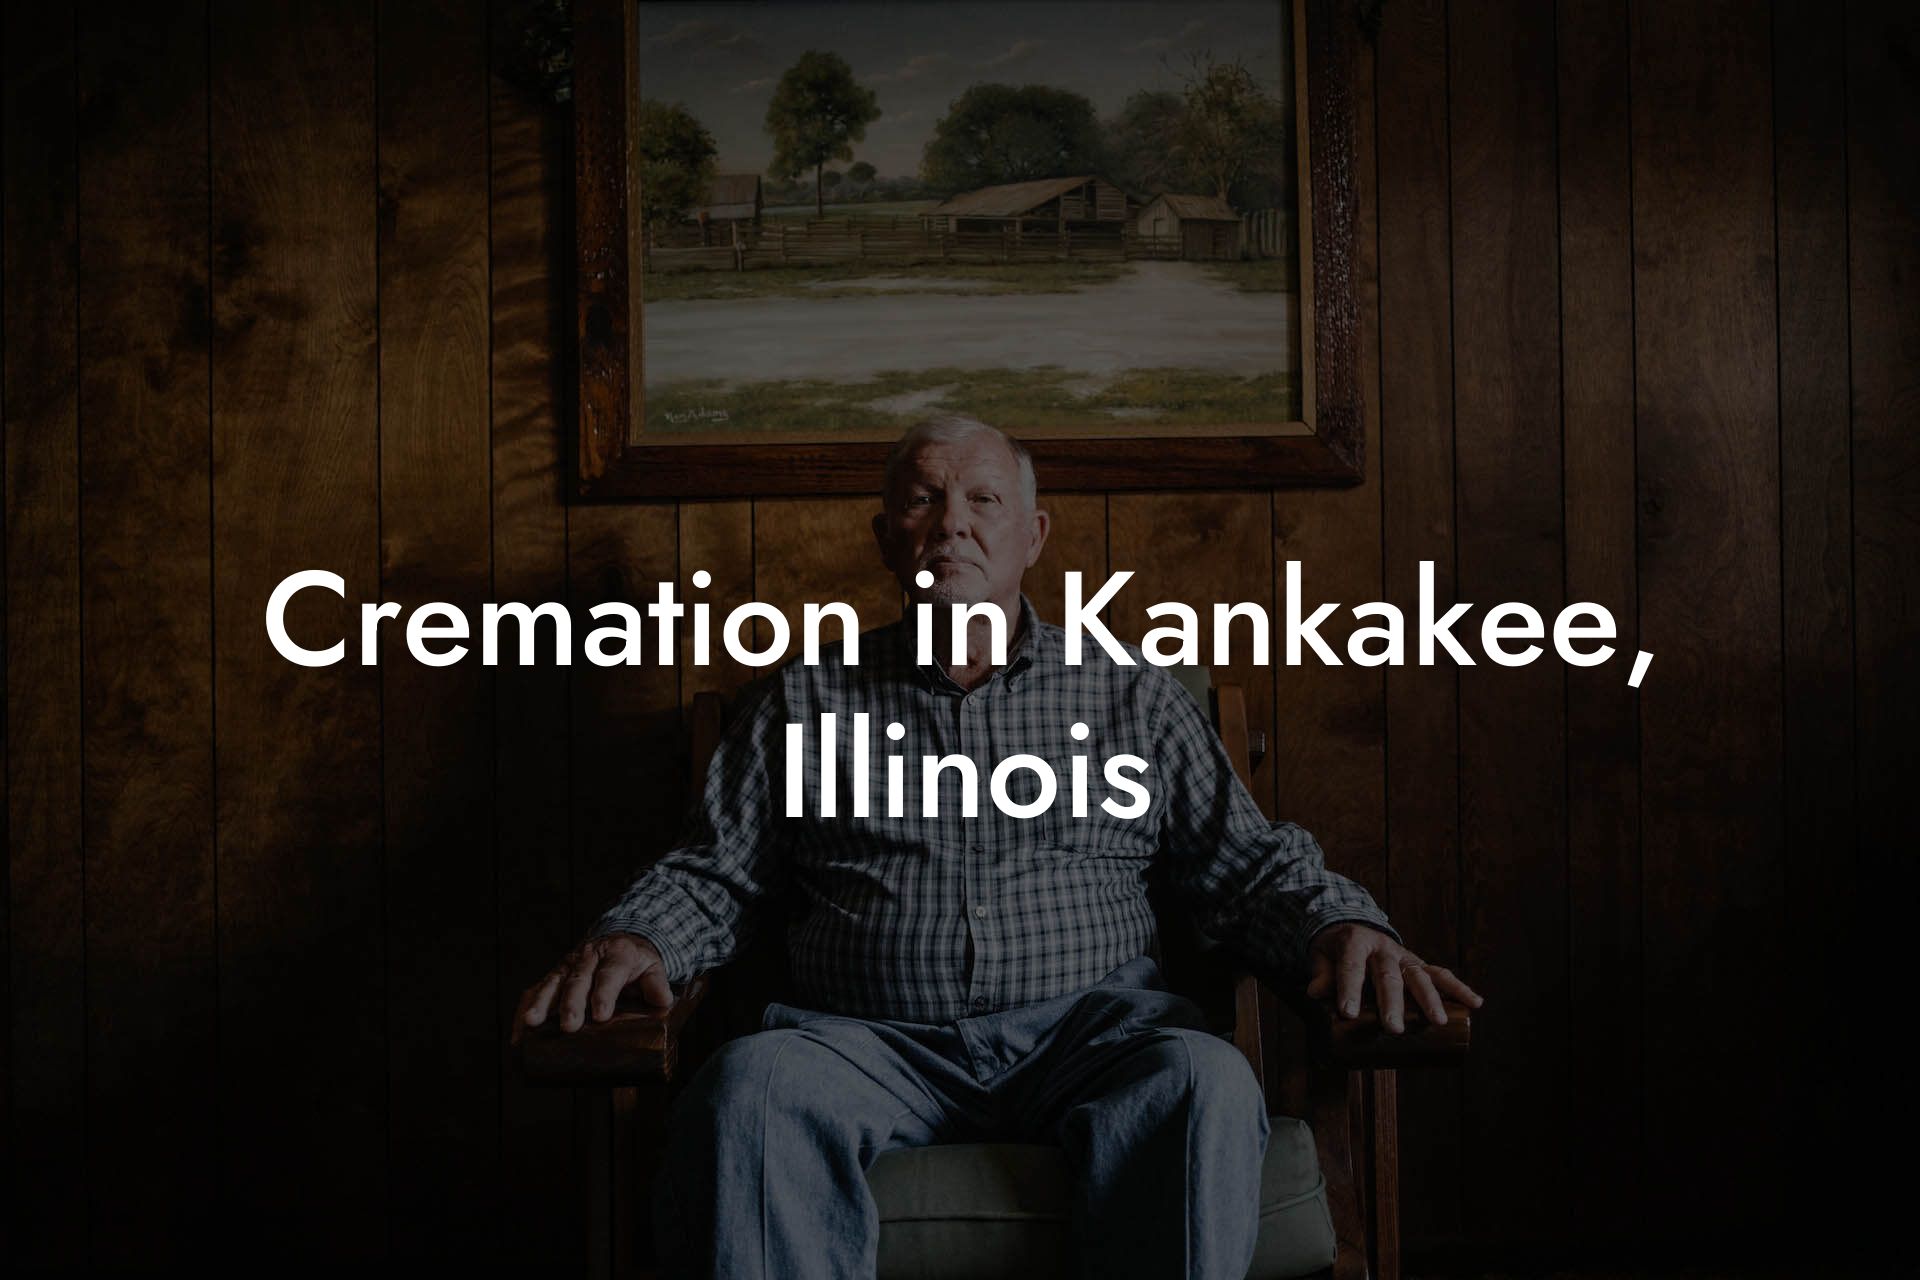 Cremation in Kankakee, Illinois